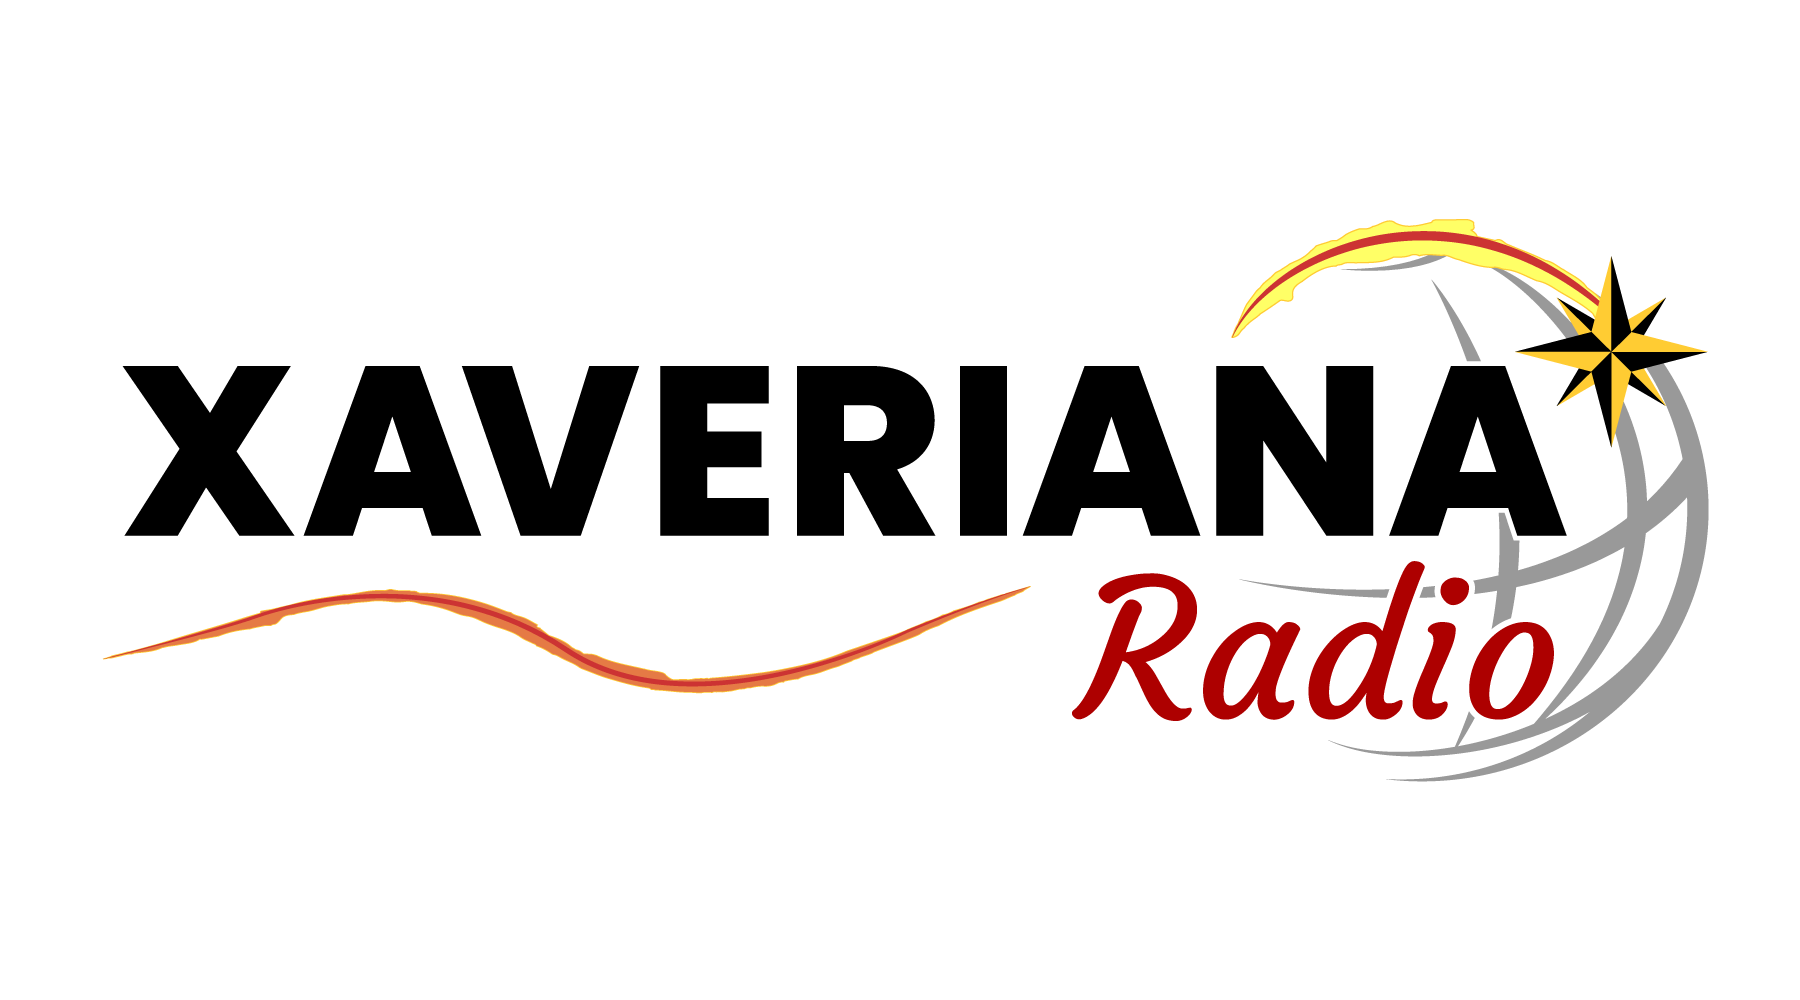 Radio Xaveriana